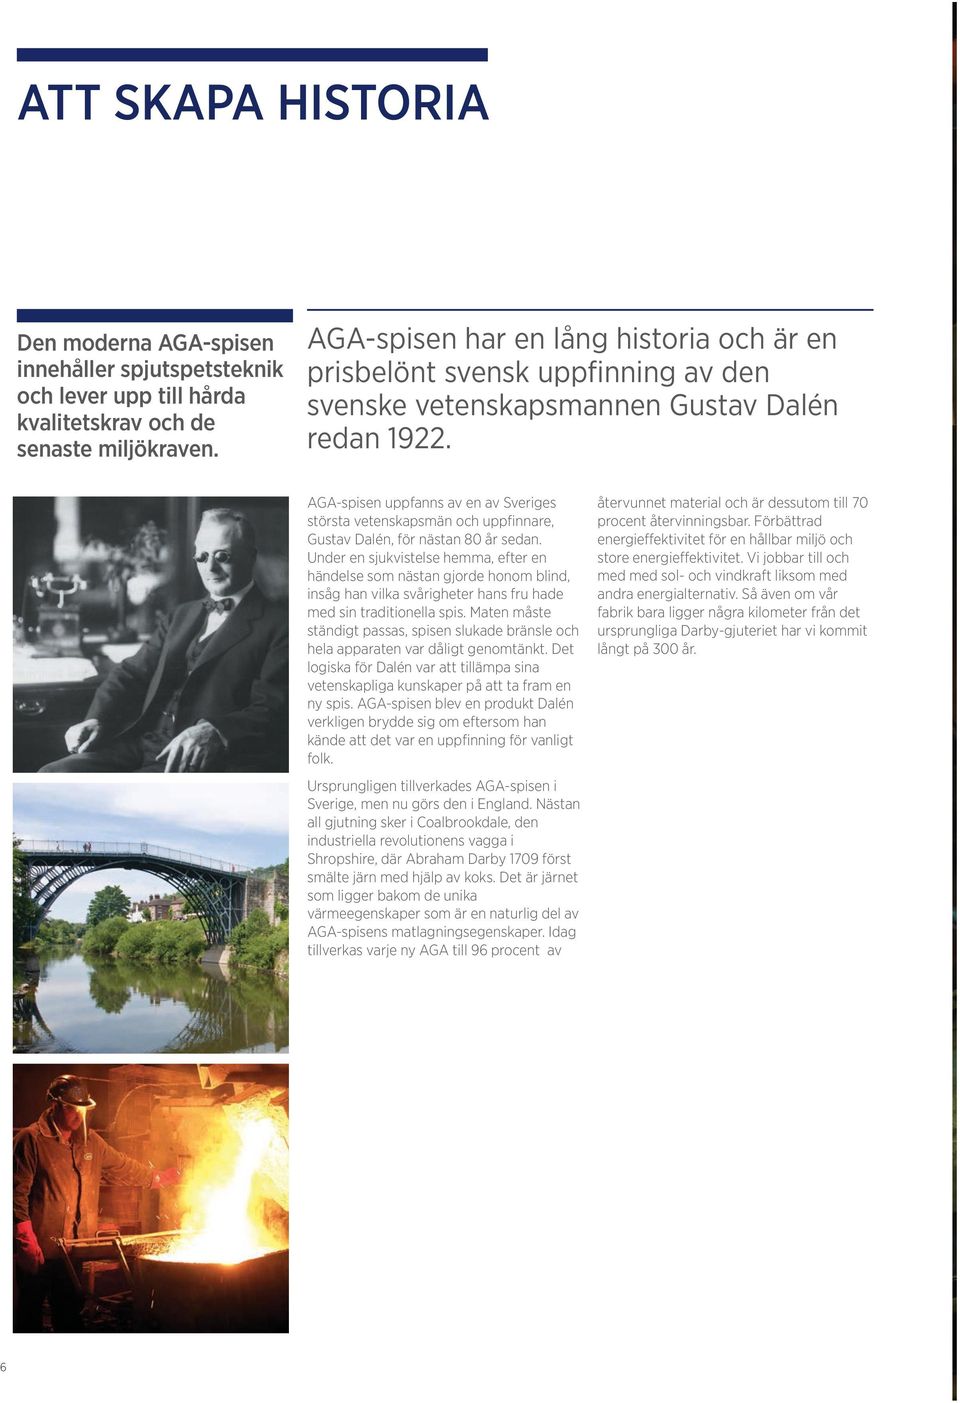 AGA-spisen uppfanns av en av Sveriges största vetenskapsmän och uppfinnare, Gustav Dalén, för nästan 80 år sedan.